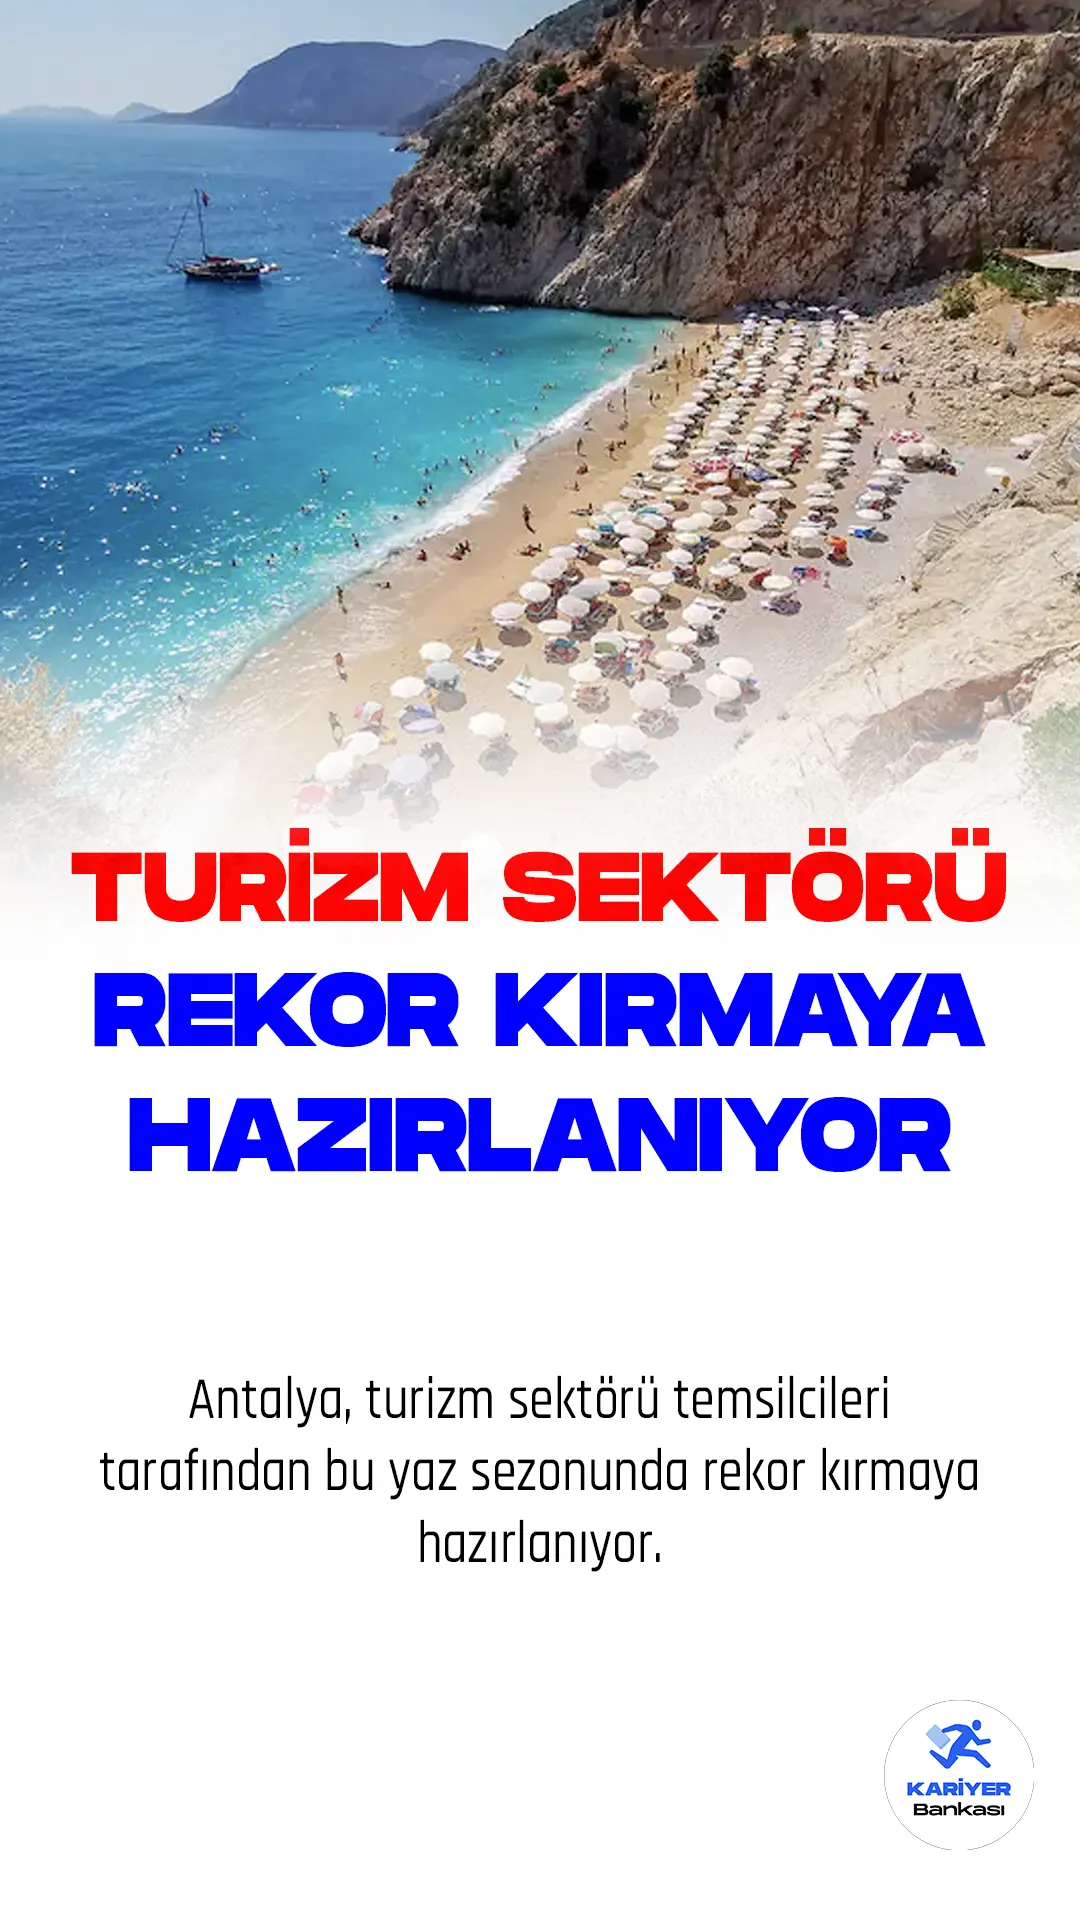 Antalya, yaklaşık 150 ülkeden turist ağırlayan ve turizm sektörü ile özdeşleşen bir şehir olarak öne çıkıyor. Denizi, güneşi, sahilleri ve tarihi, kültürel değerleri ile yabancı rakiplerine göre daha iddialı bir konumda bulunan Antalya, turizm sektörü temsilcileri tarafından bu yaz sezonunda rekor kırmaya hazırlanıyor.